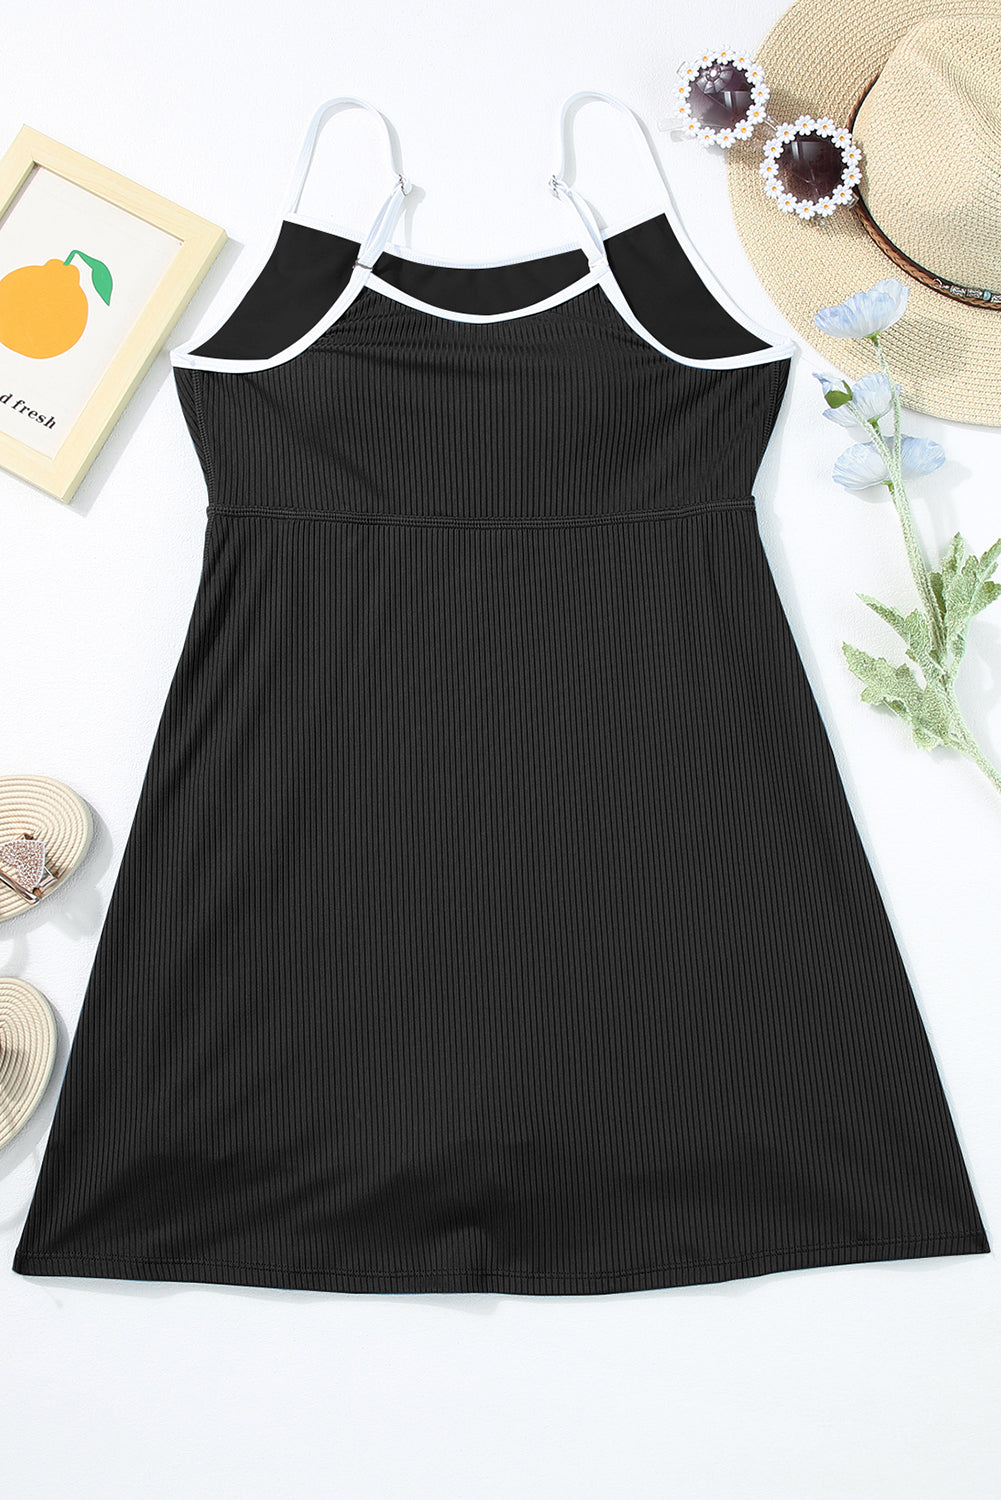 Crna sportska jednodijelna kupaća haljina s rebrastim naramenicama